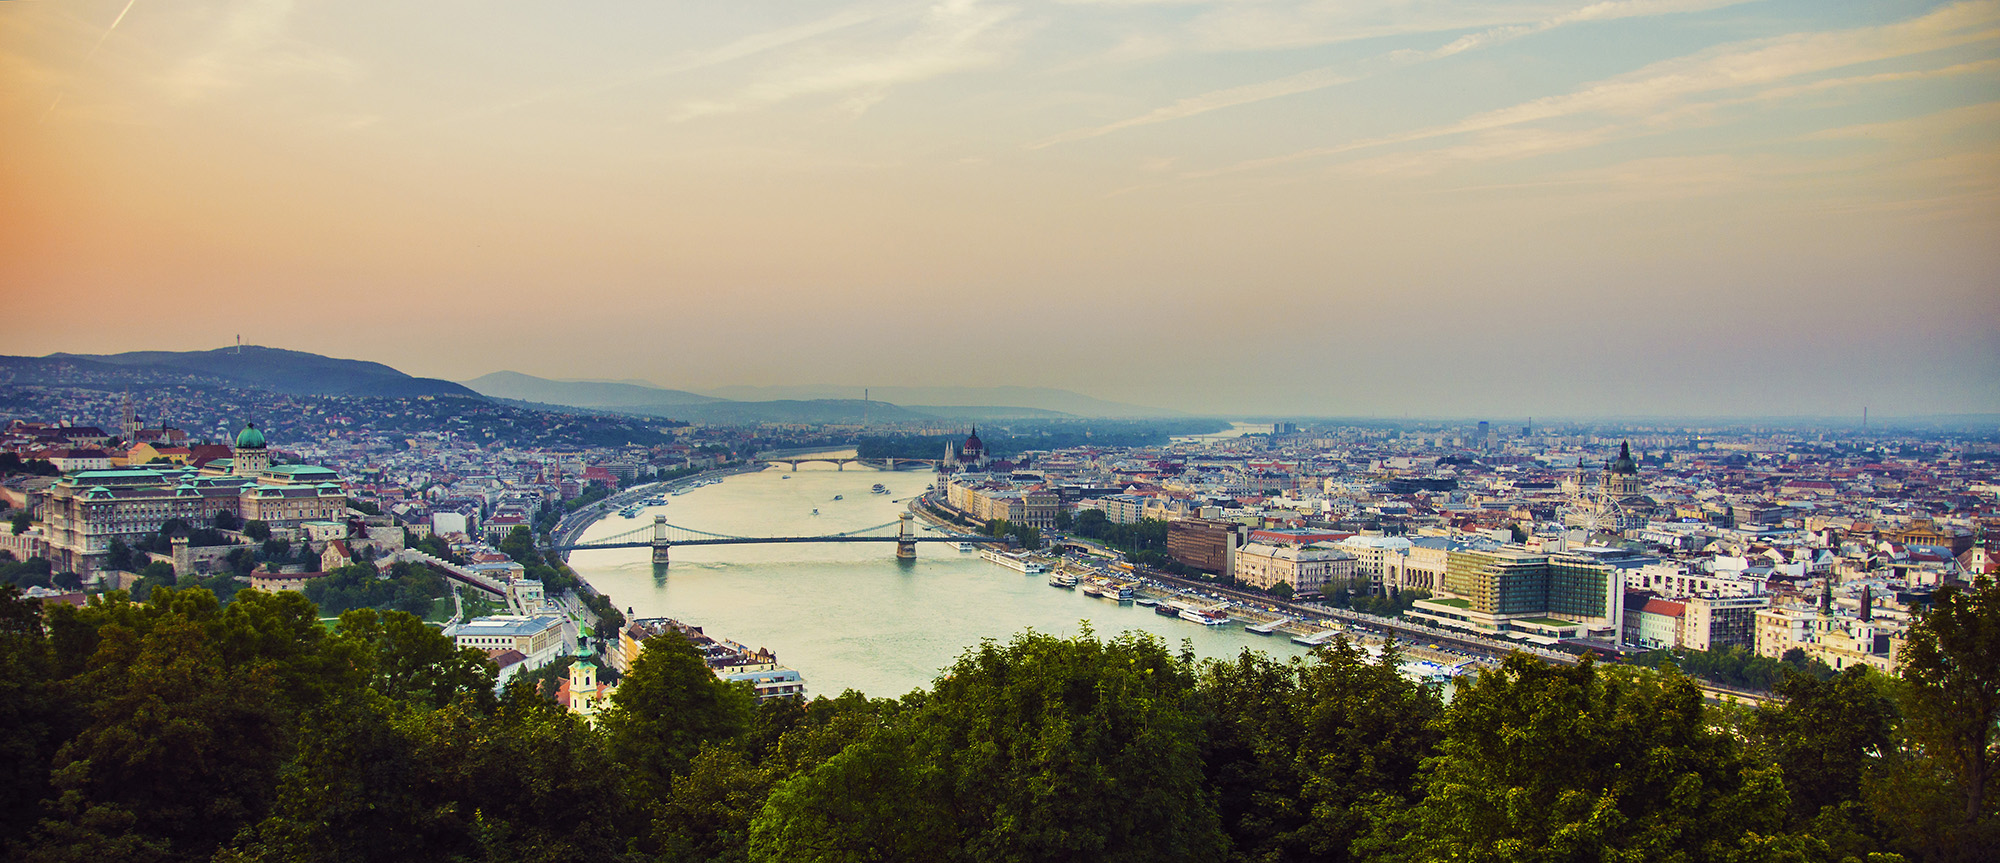 Budapeszt w dwa dni, czyli o tydzień za krótko | OneDayStop Blog